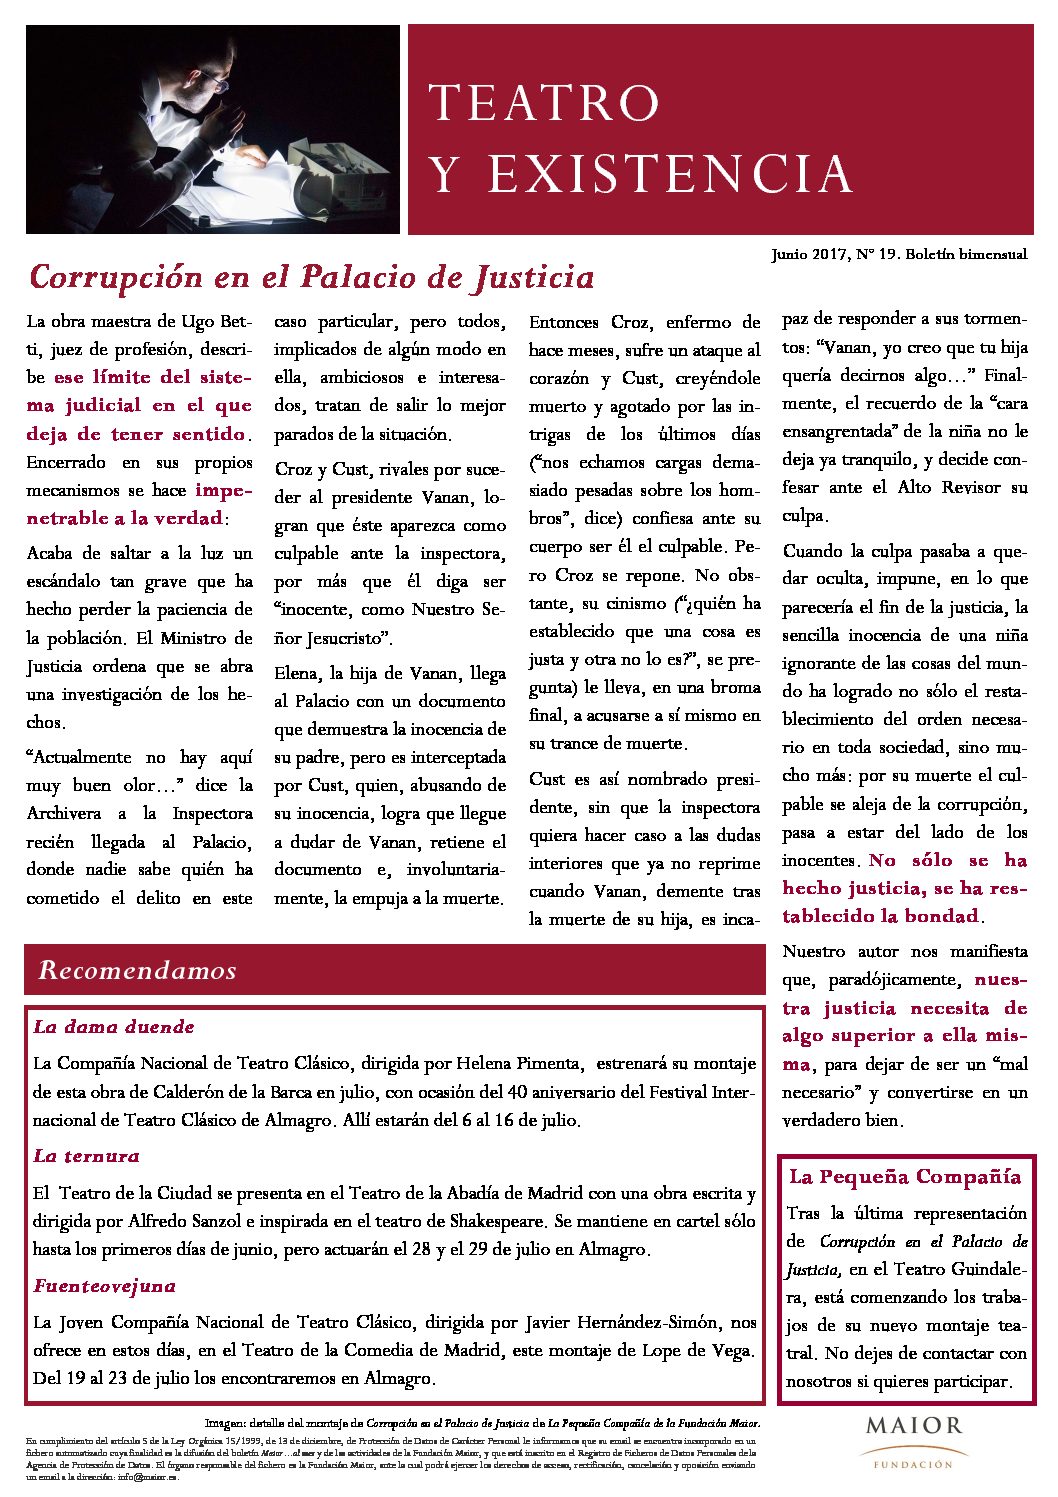 Boletín de Teatro y Existencia de La Pequeña Compañía de la Fundación Maior, con recomendaciones de la cartelera. Edición de Junio 2017